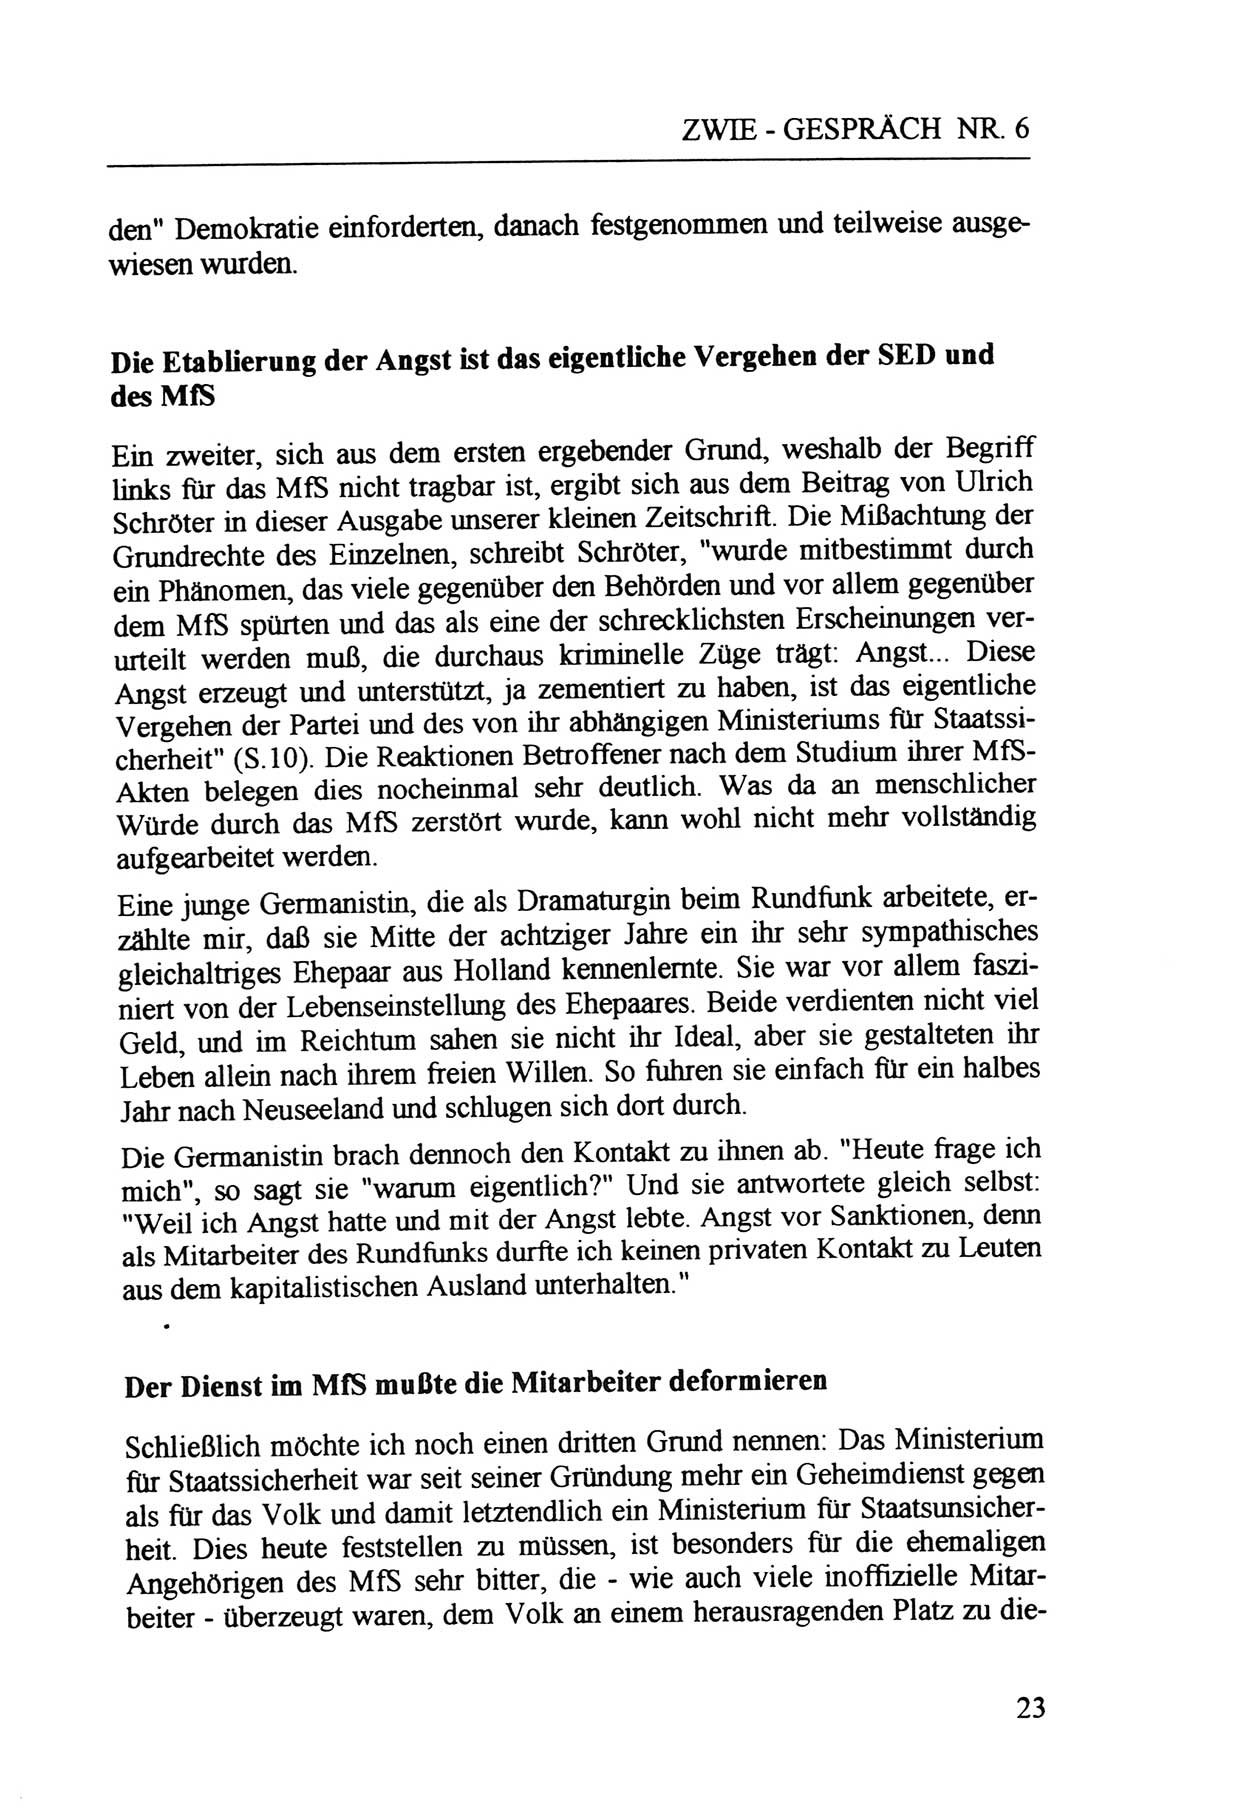 Zwie-Gespräch, Beiträge zur Aufarbeitung der Staatssicherheits-Vergangenheit [Deutsche Demokratische Republik (DDR)], Ausgabe Nr. 6, Berlin 1992, Seite 23 (Zwie-Gespr. Ausg. 6 1992, S. 23)